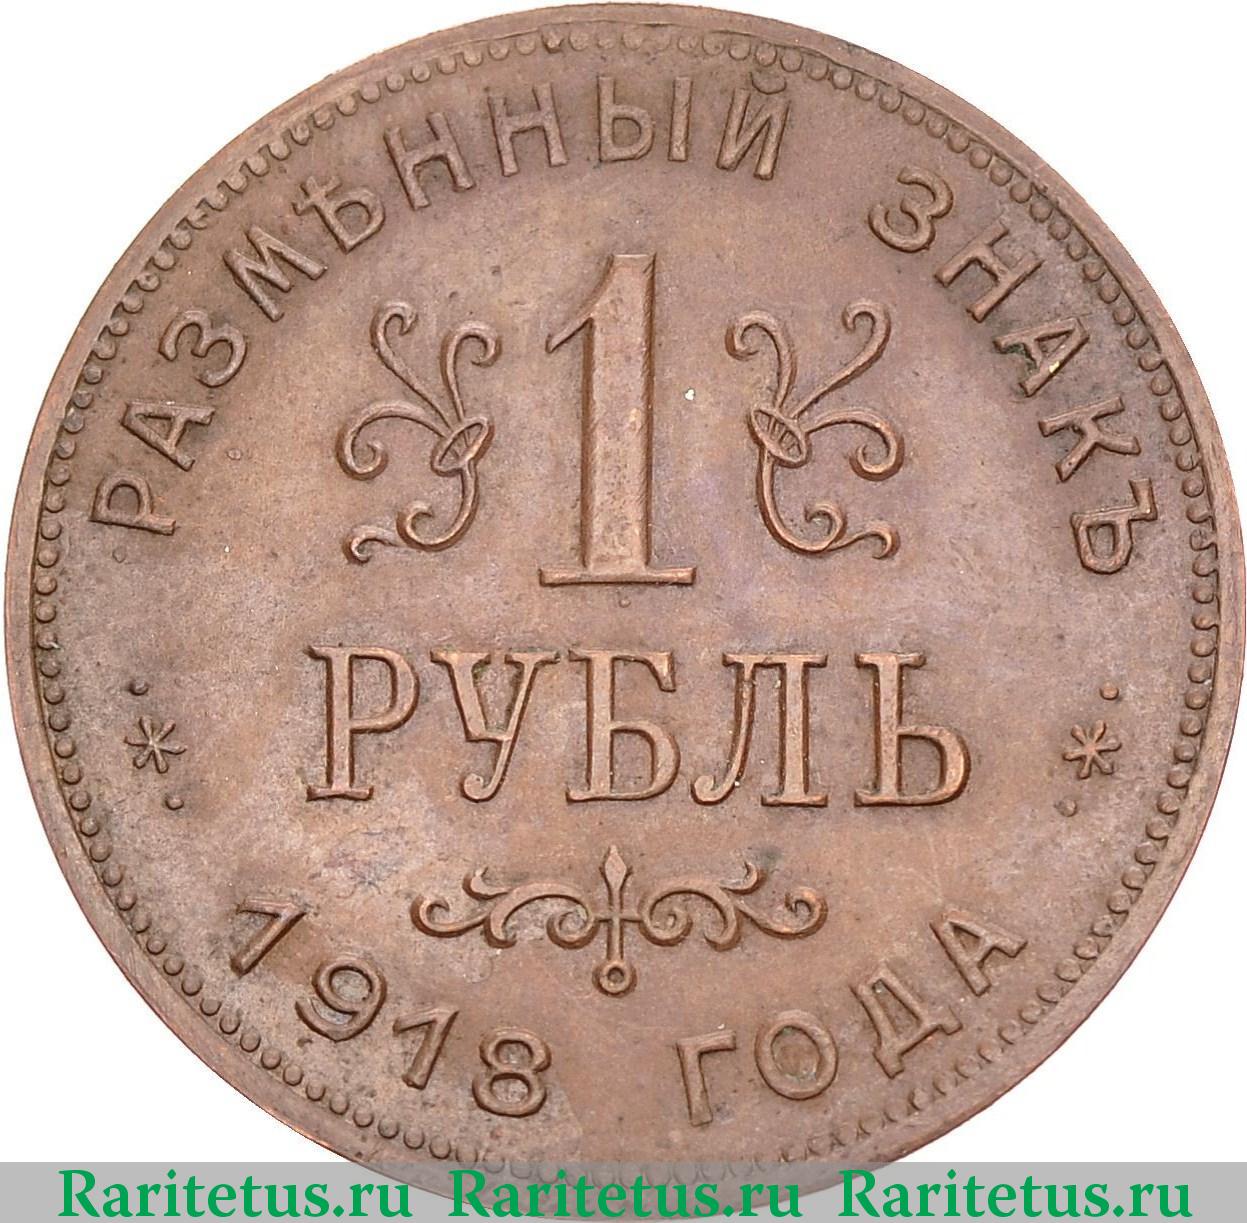 1 рубль. Армавир. 1918 г. Реверс